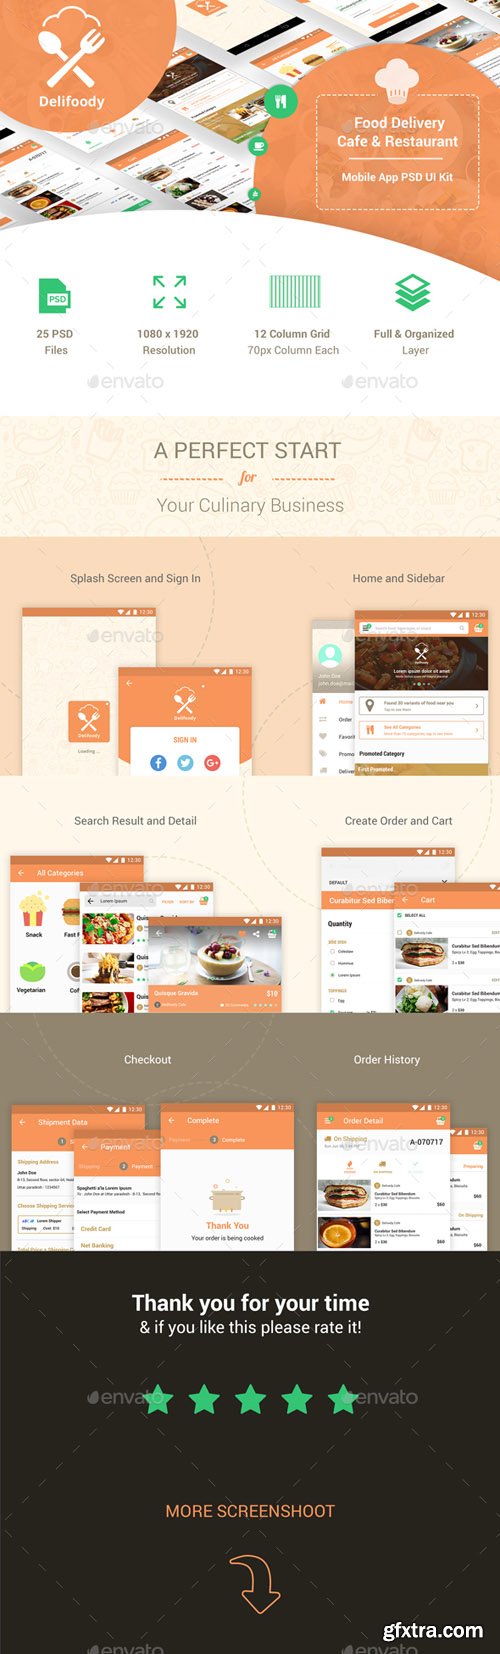 GR - Delifoody | Food Delivery & Restaurant Mobile UI Kit 20652806